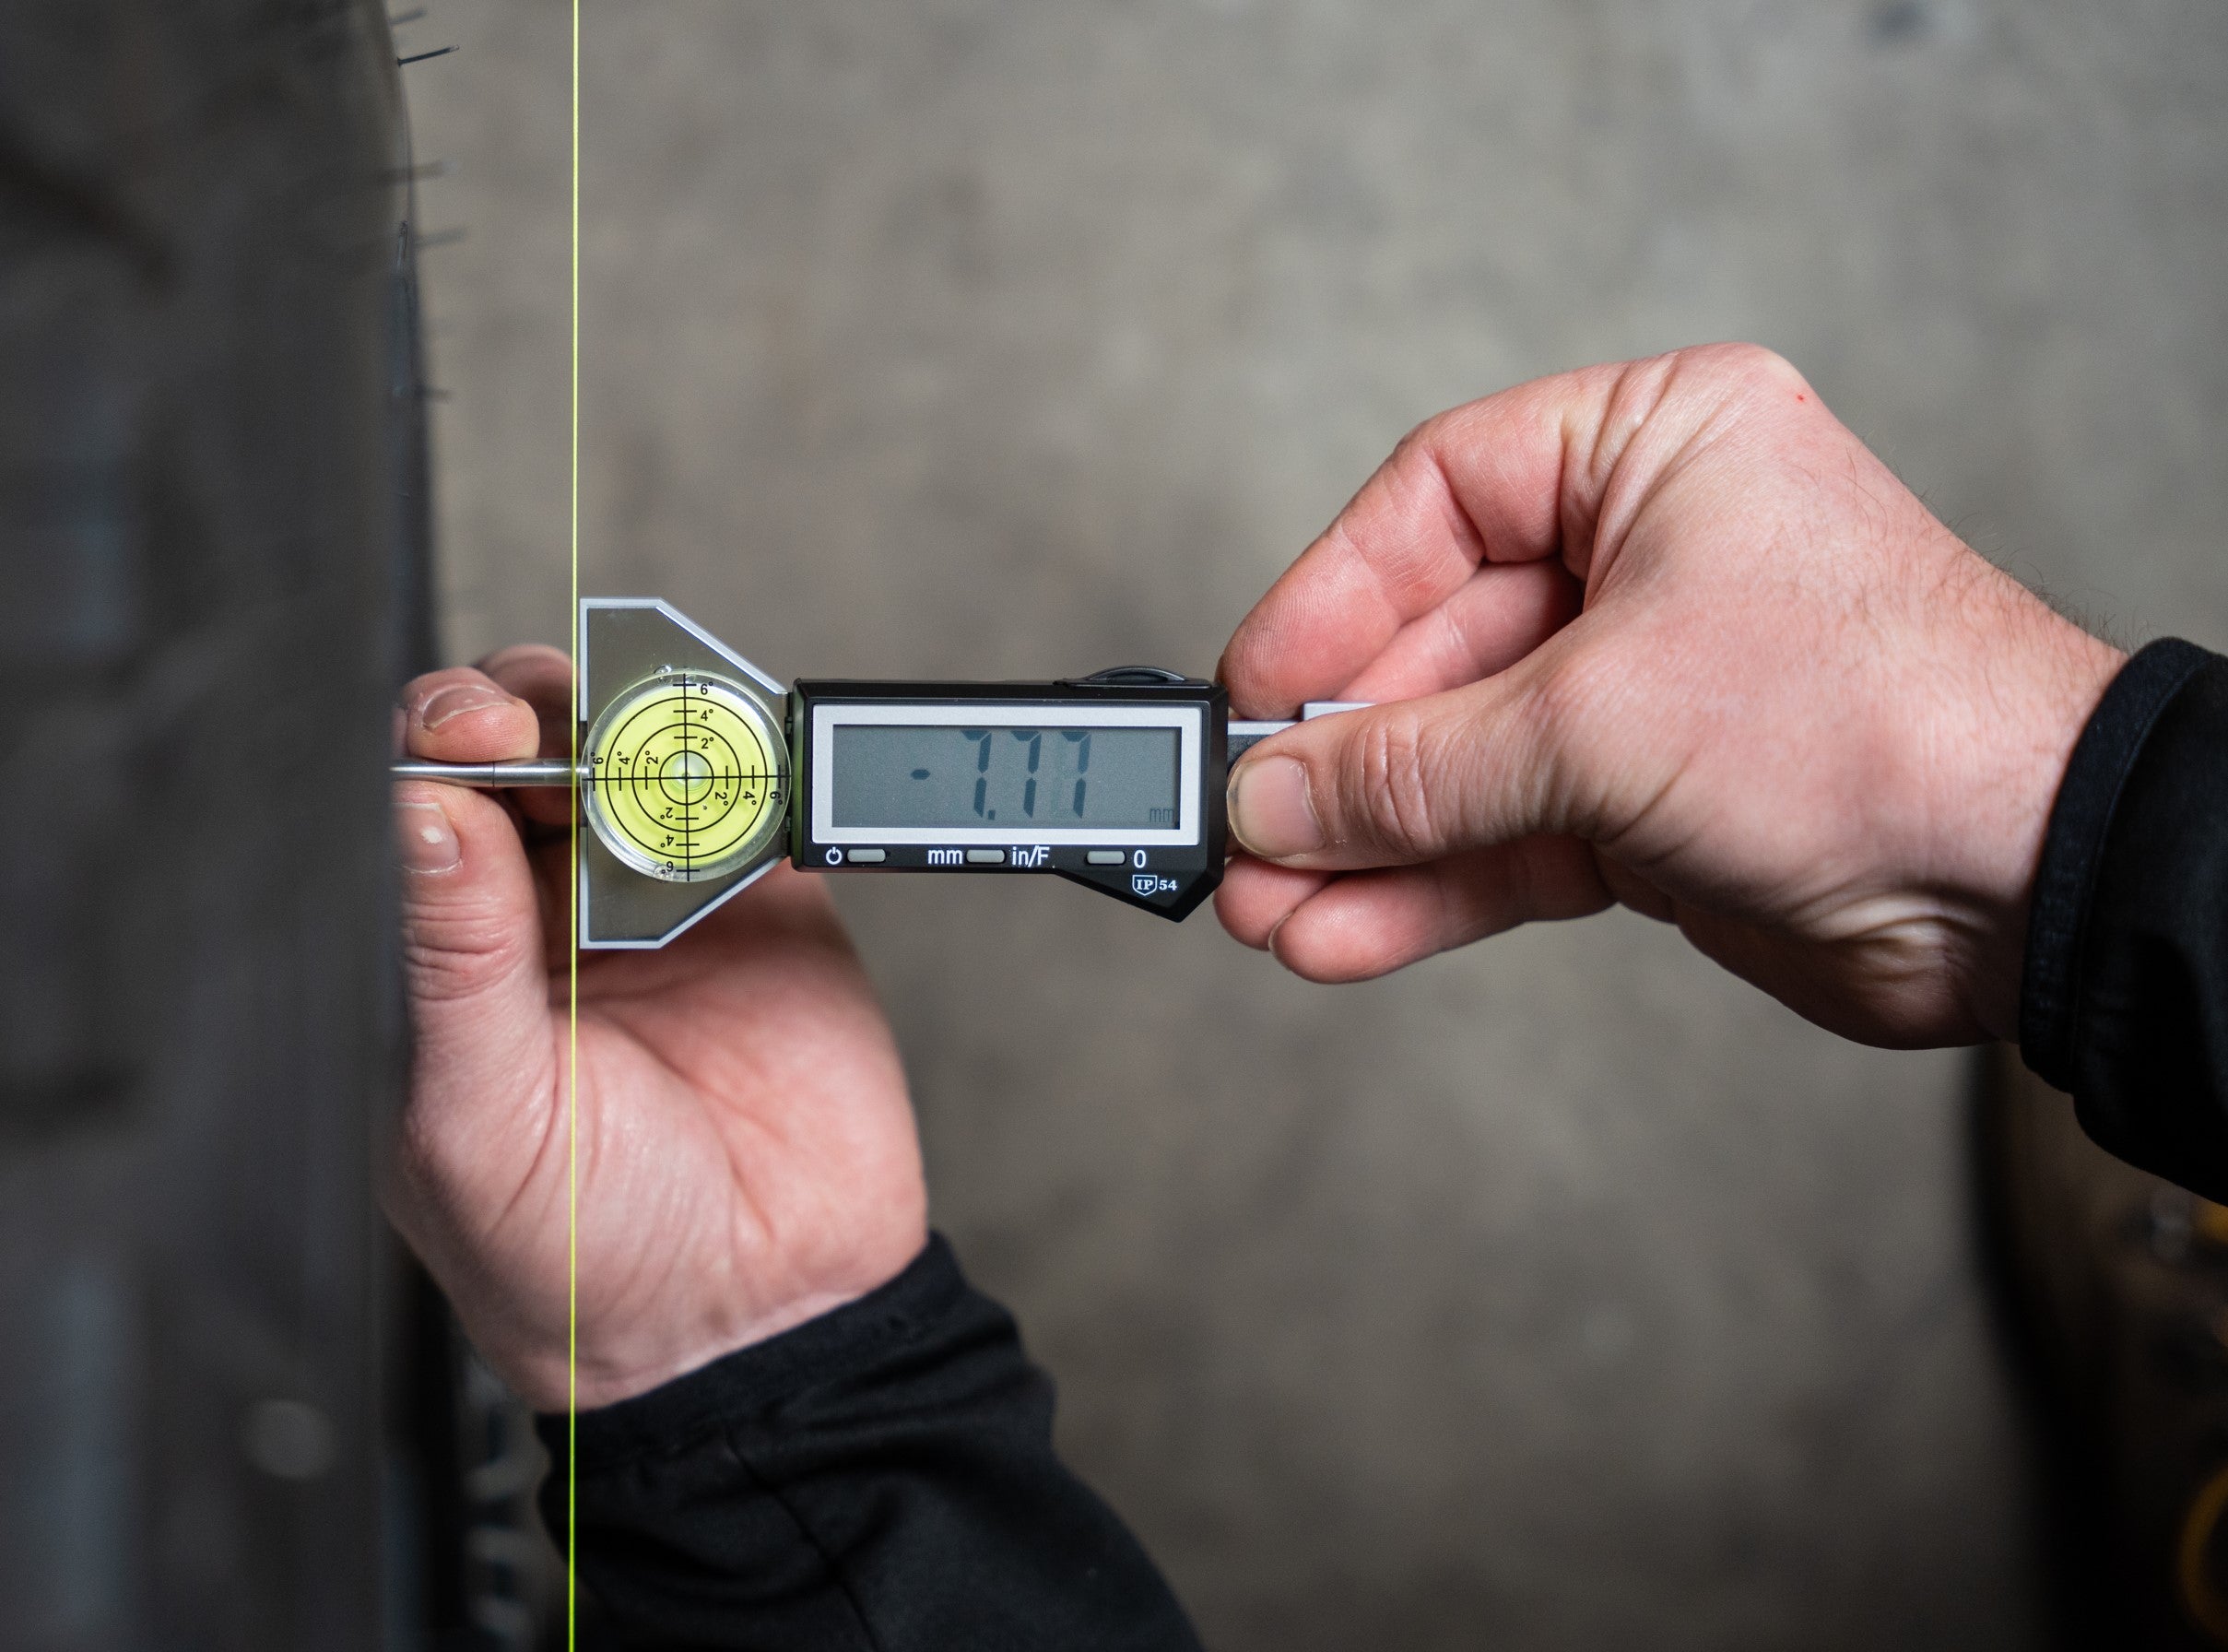 ToeTal Tool makes measuring a breeze